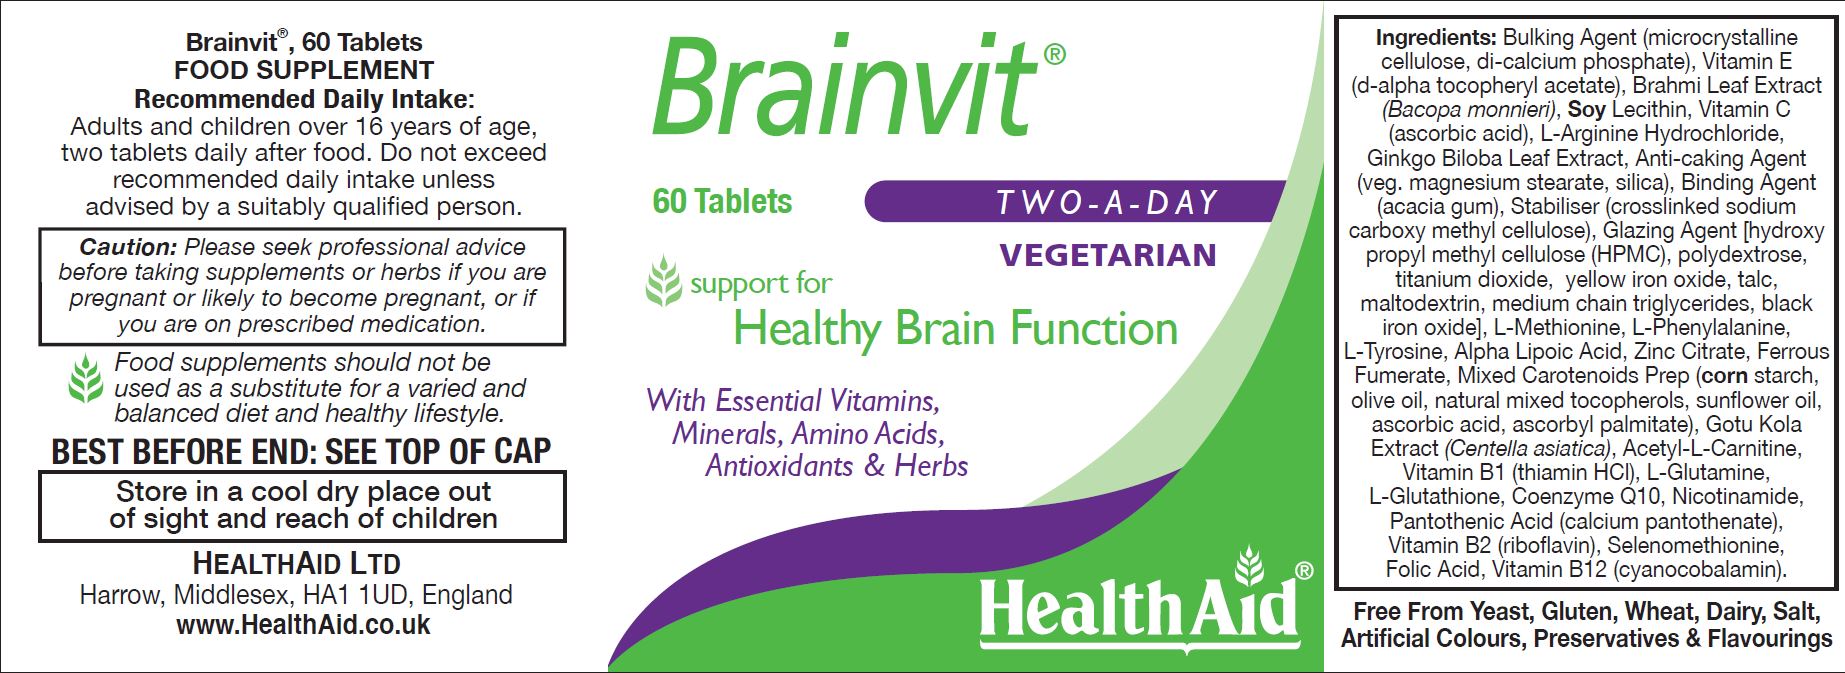 Health Aid BrainVit 60's